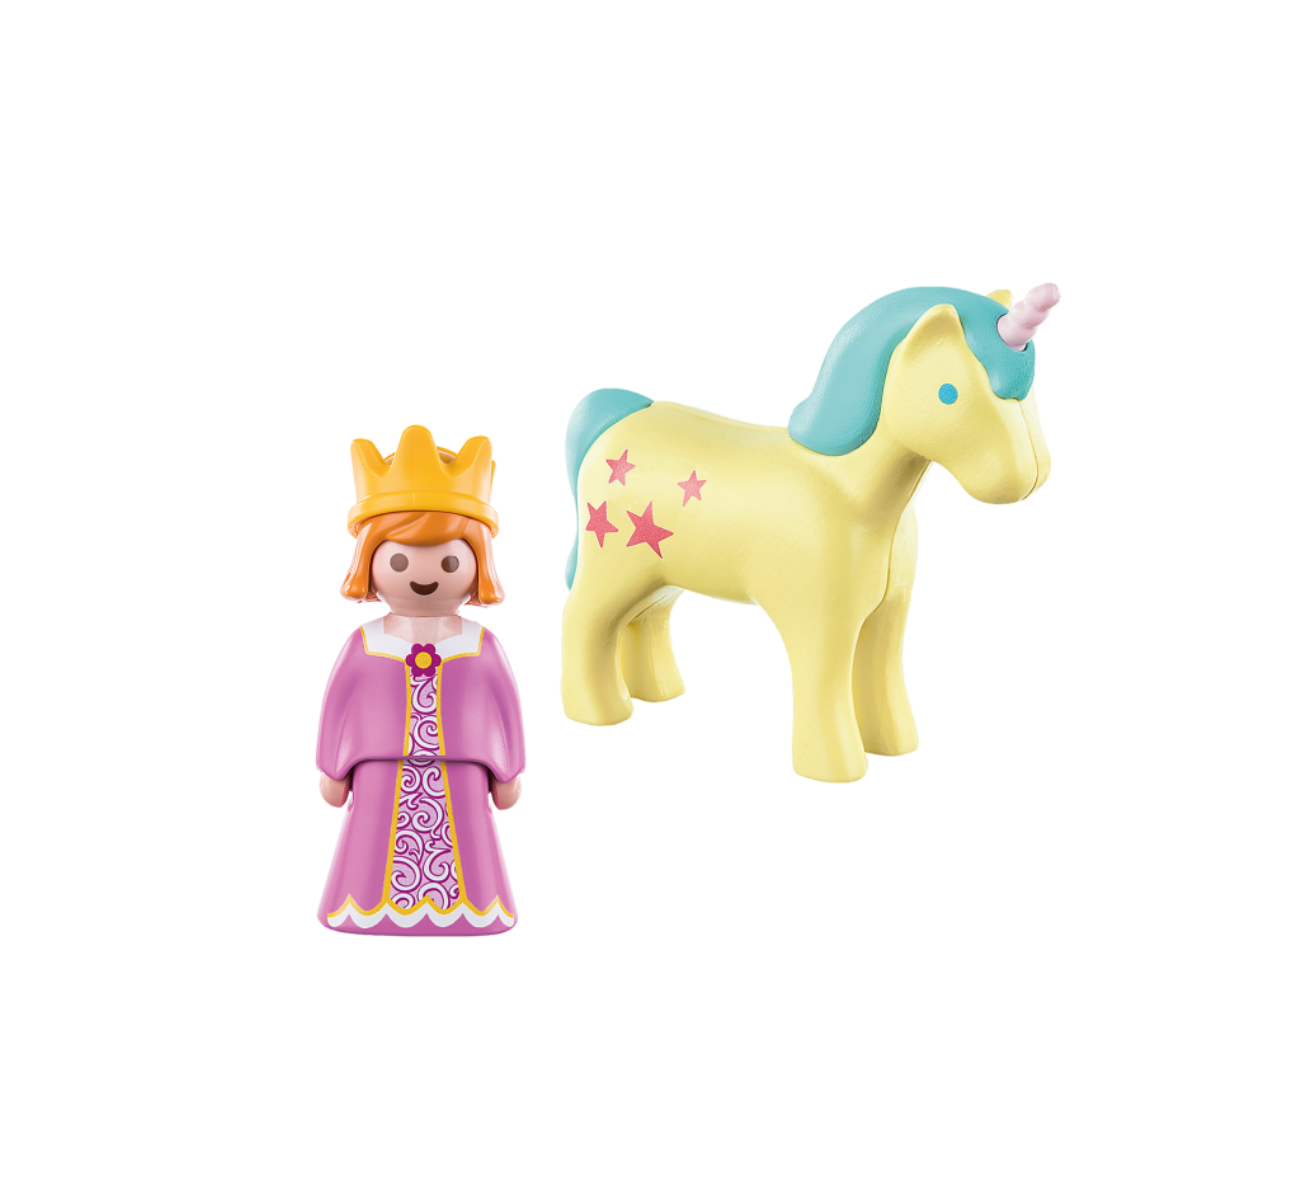 PLAYMOBIL Prinzessin mit Einhorn Spielzeug